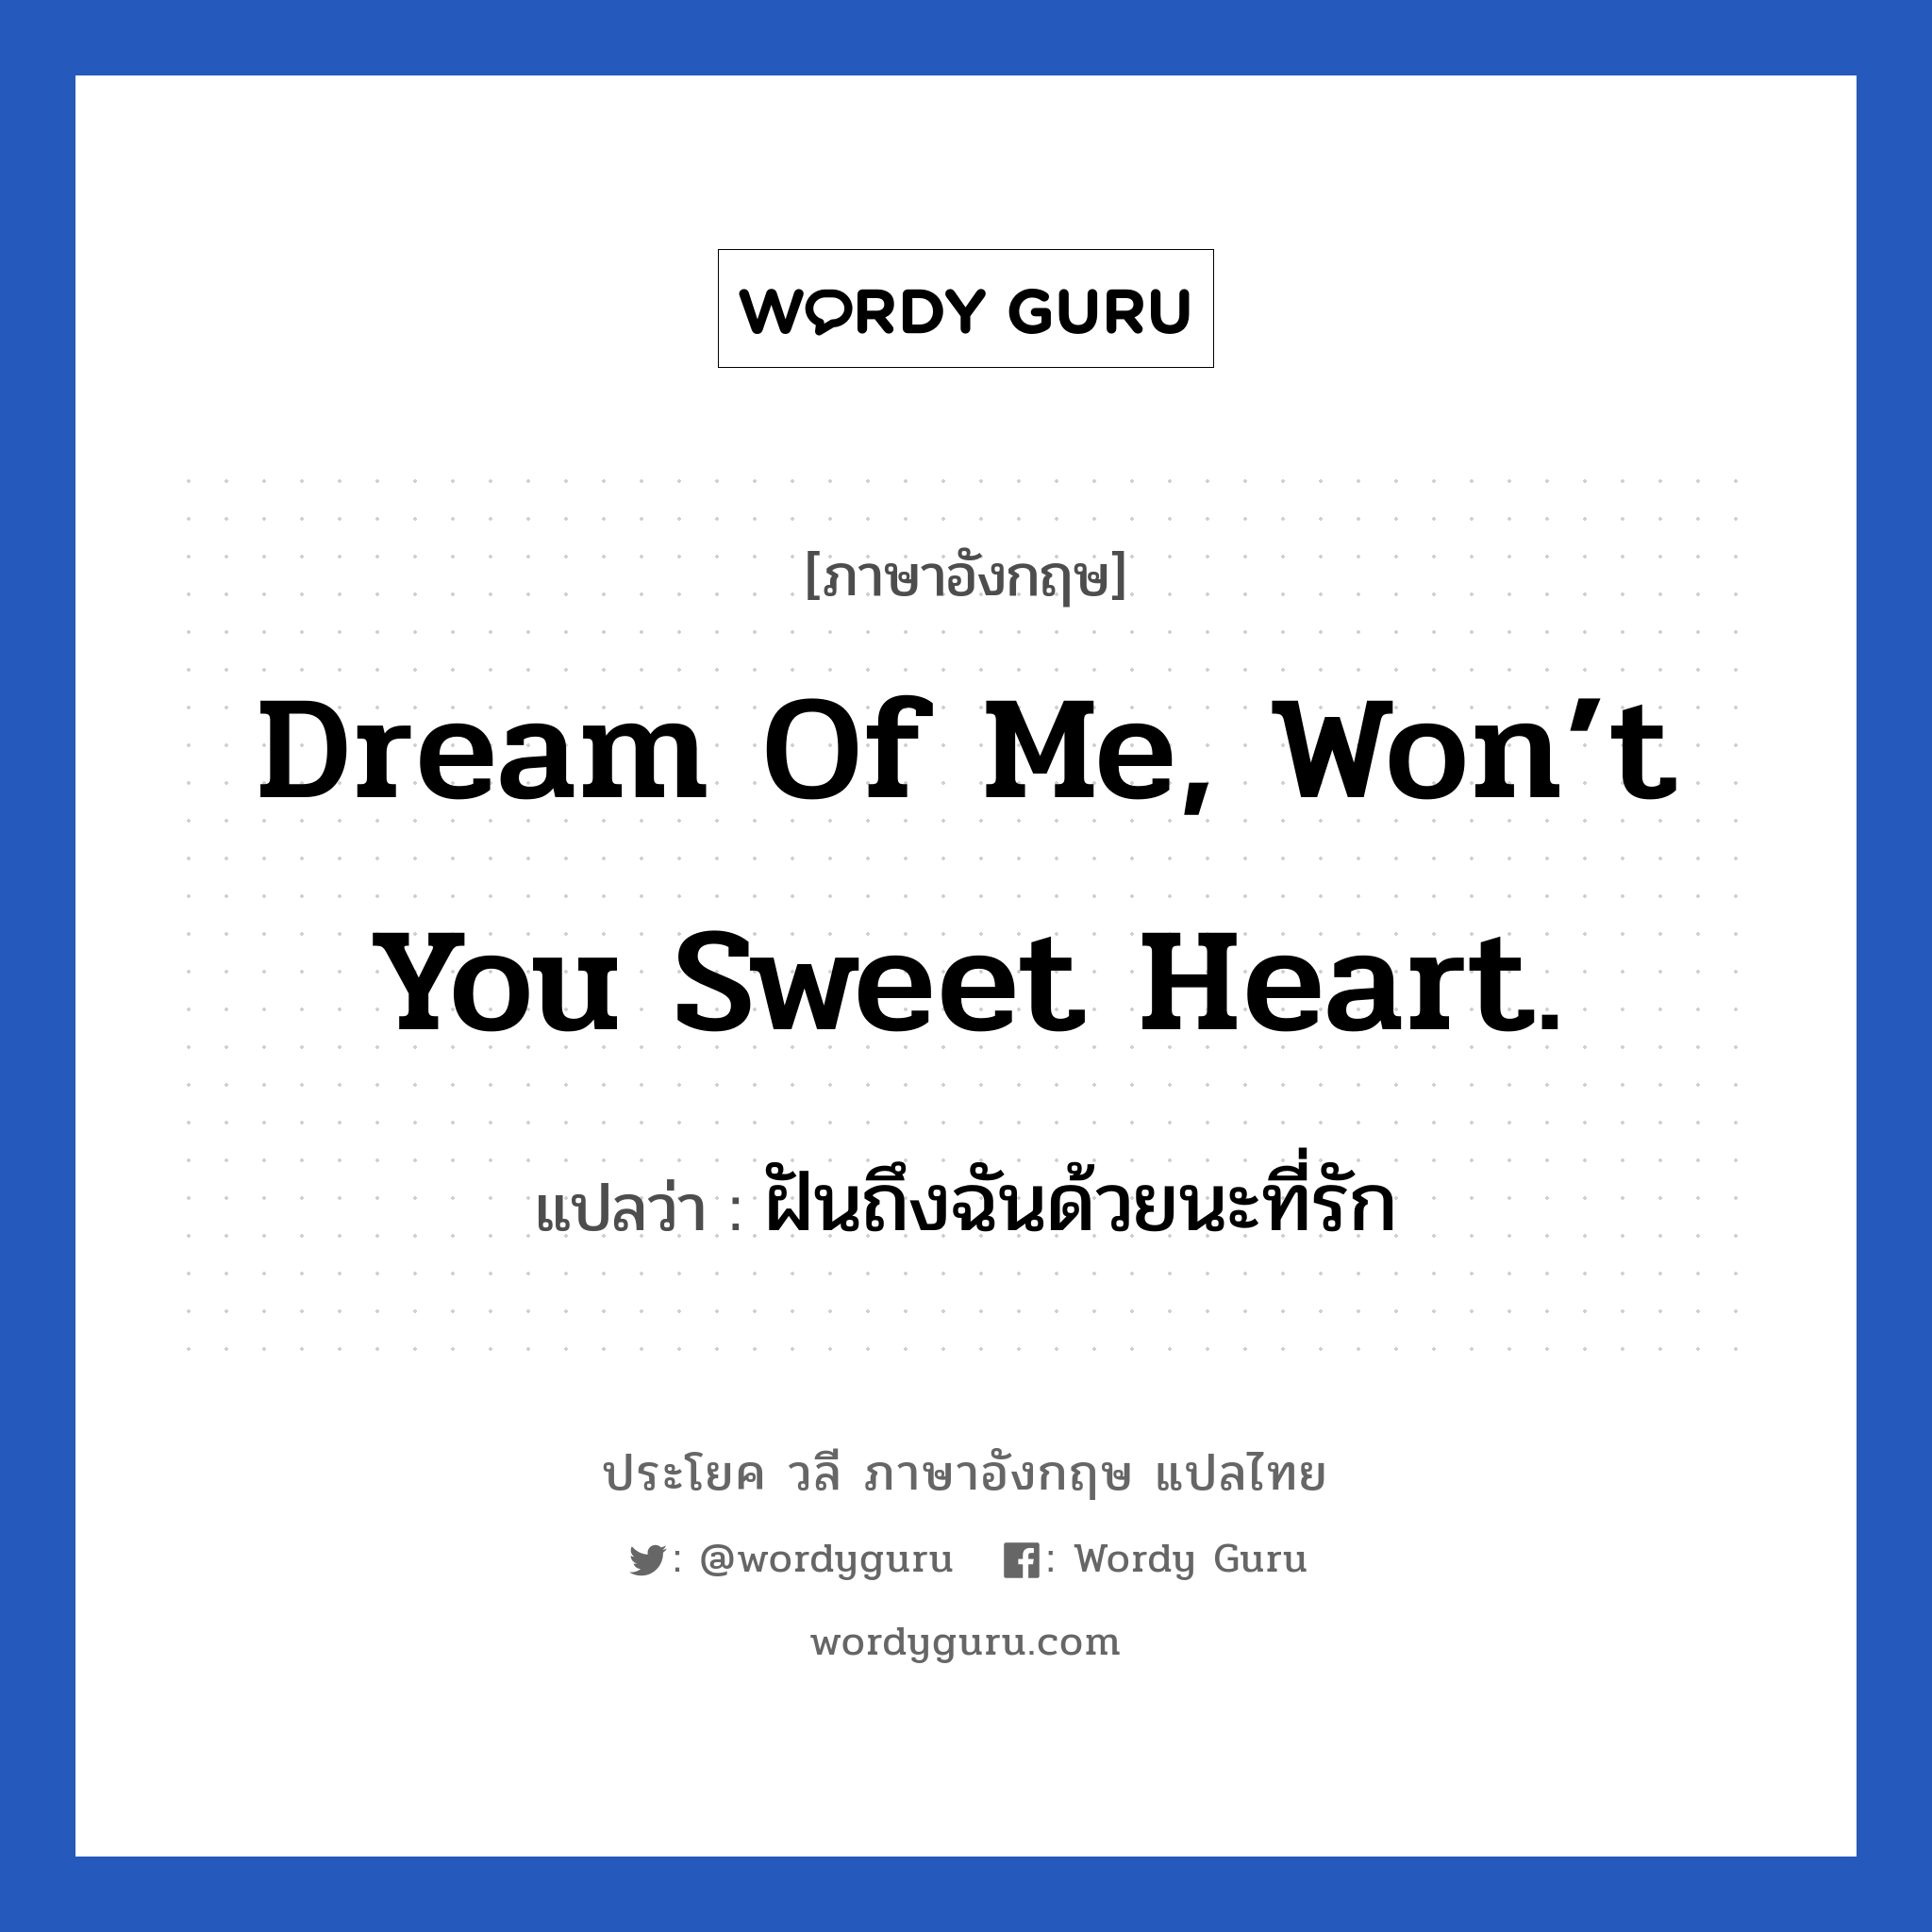 Dream of me, won’t you sweet heart. แปลว่า?, วลีภาษาอังกฤษ Dream of me, won’t you sweet heart. แปลว่า ฝันถึงฉันด้วยนะที่รัก